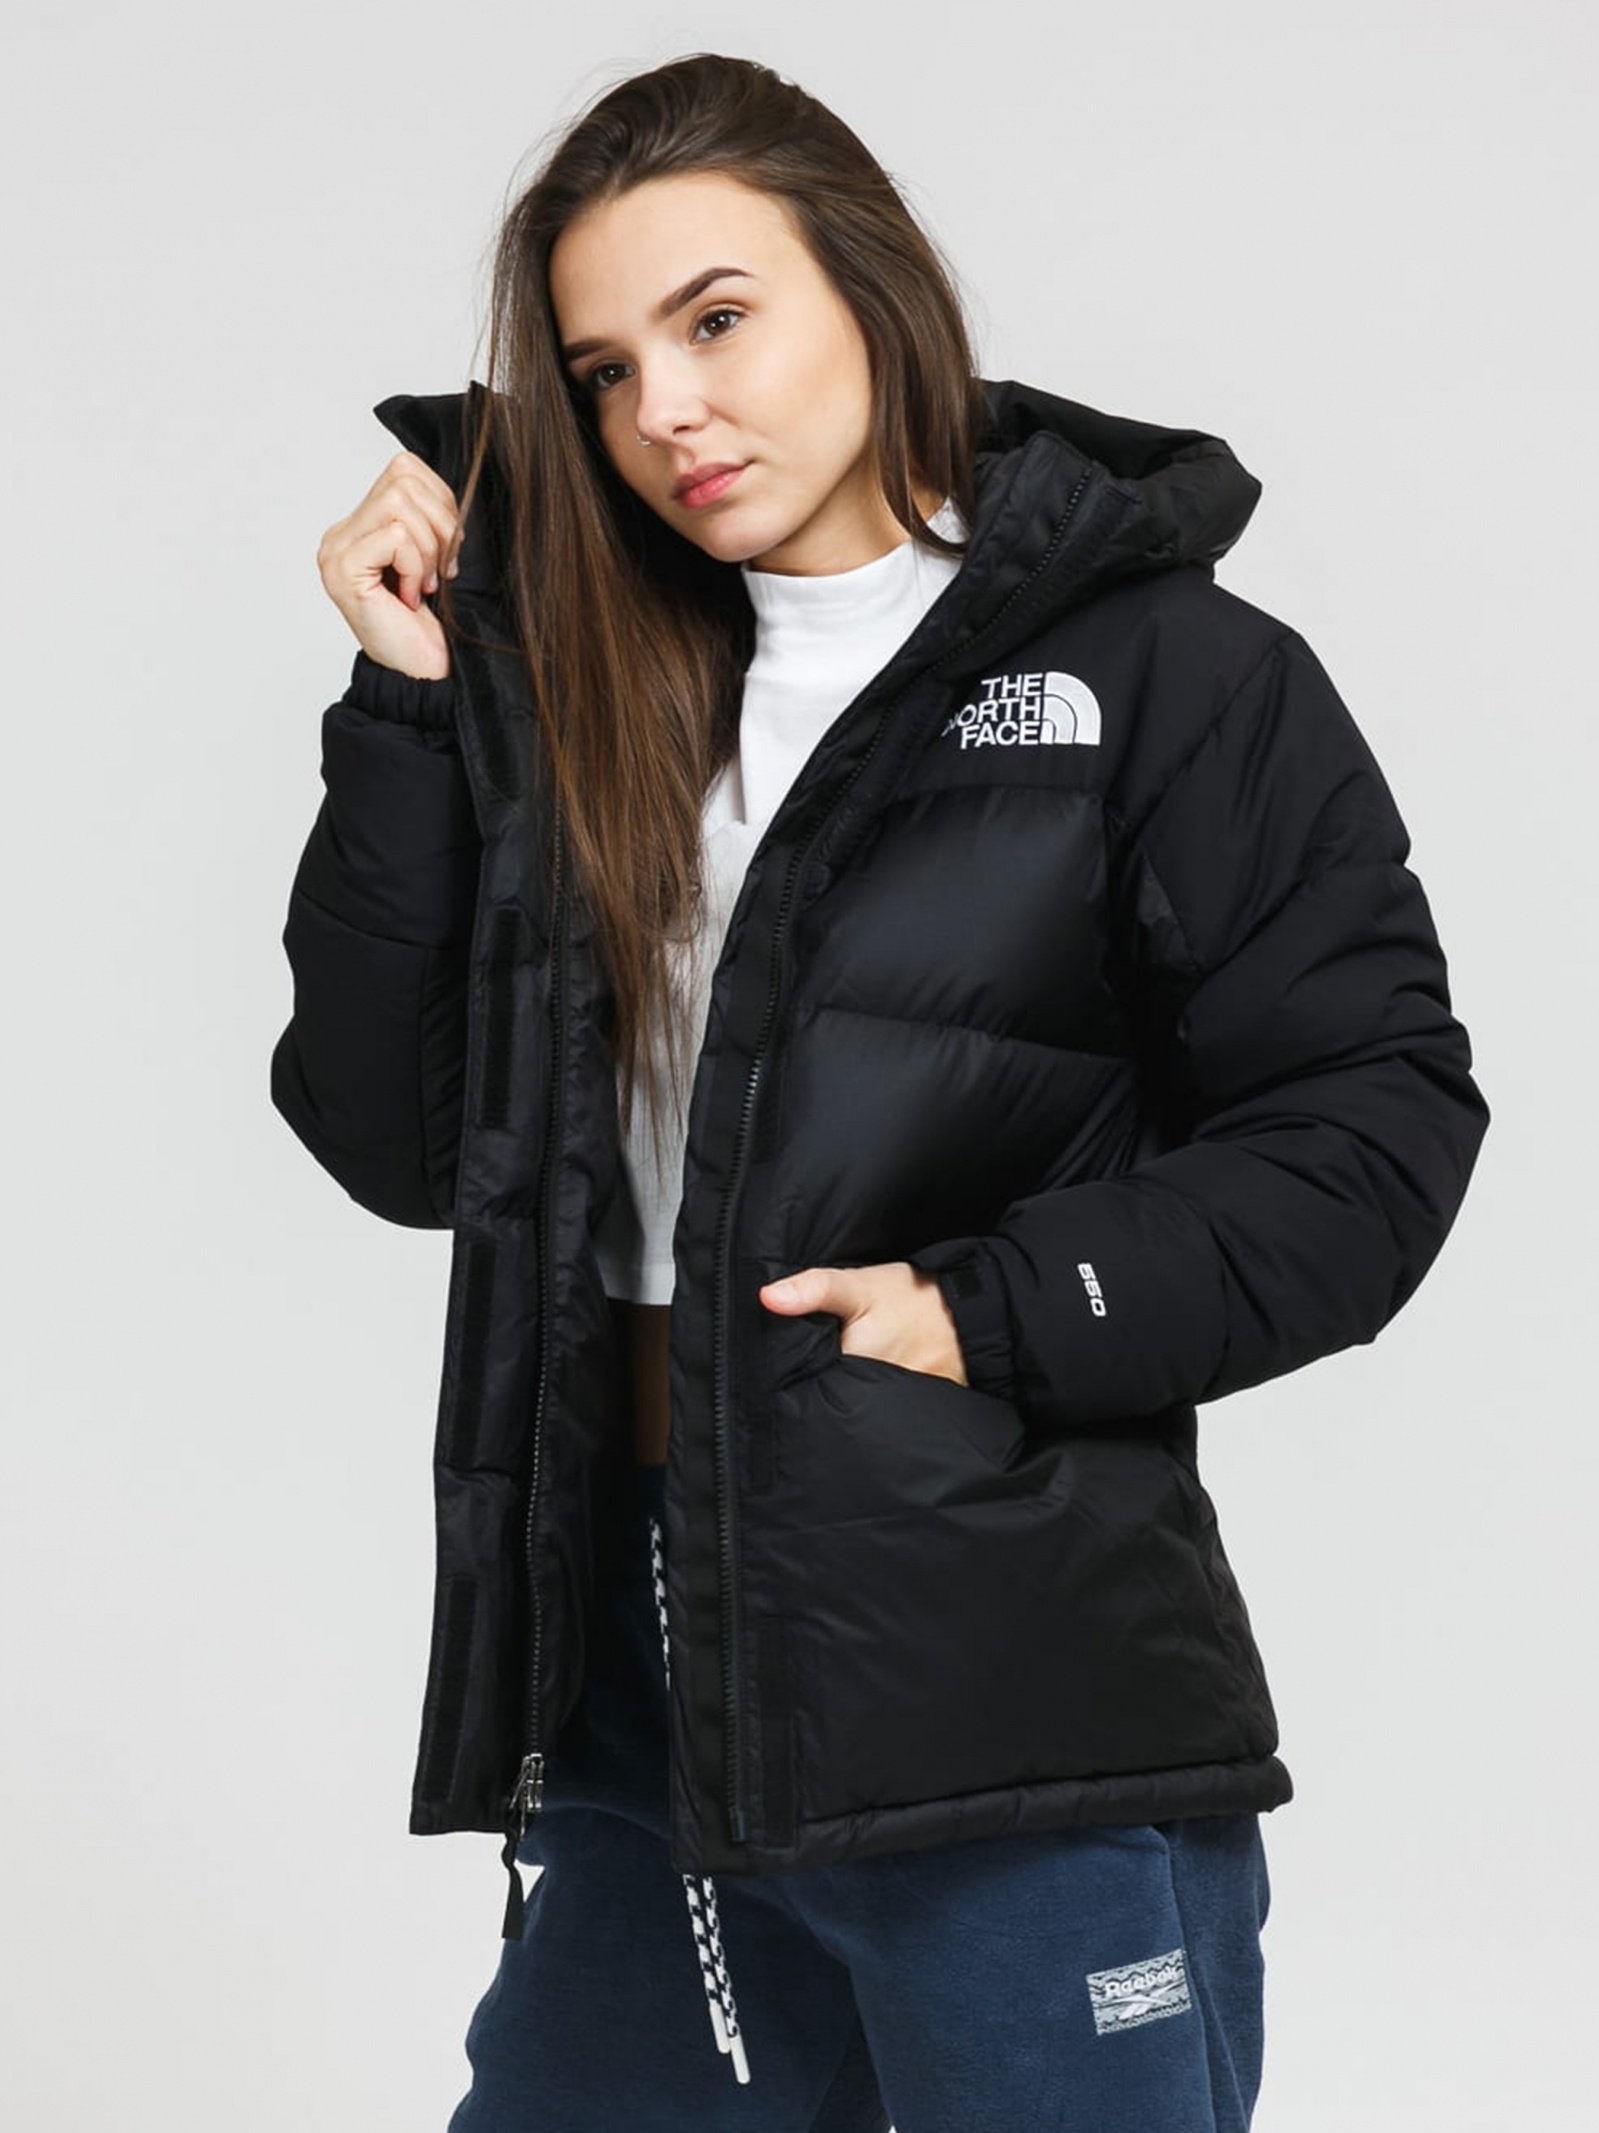 Зимняя куртка The North Face Hmlyn NF0A4R2WJK31 для женщин, цвет: Чёрный  купить в Киеве, Украине в магазине Intertop: цена, фото, отзывы